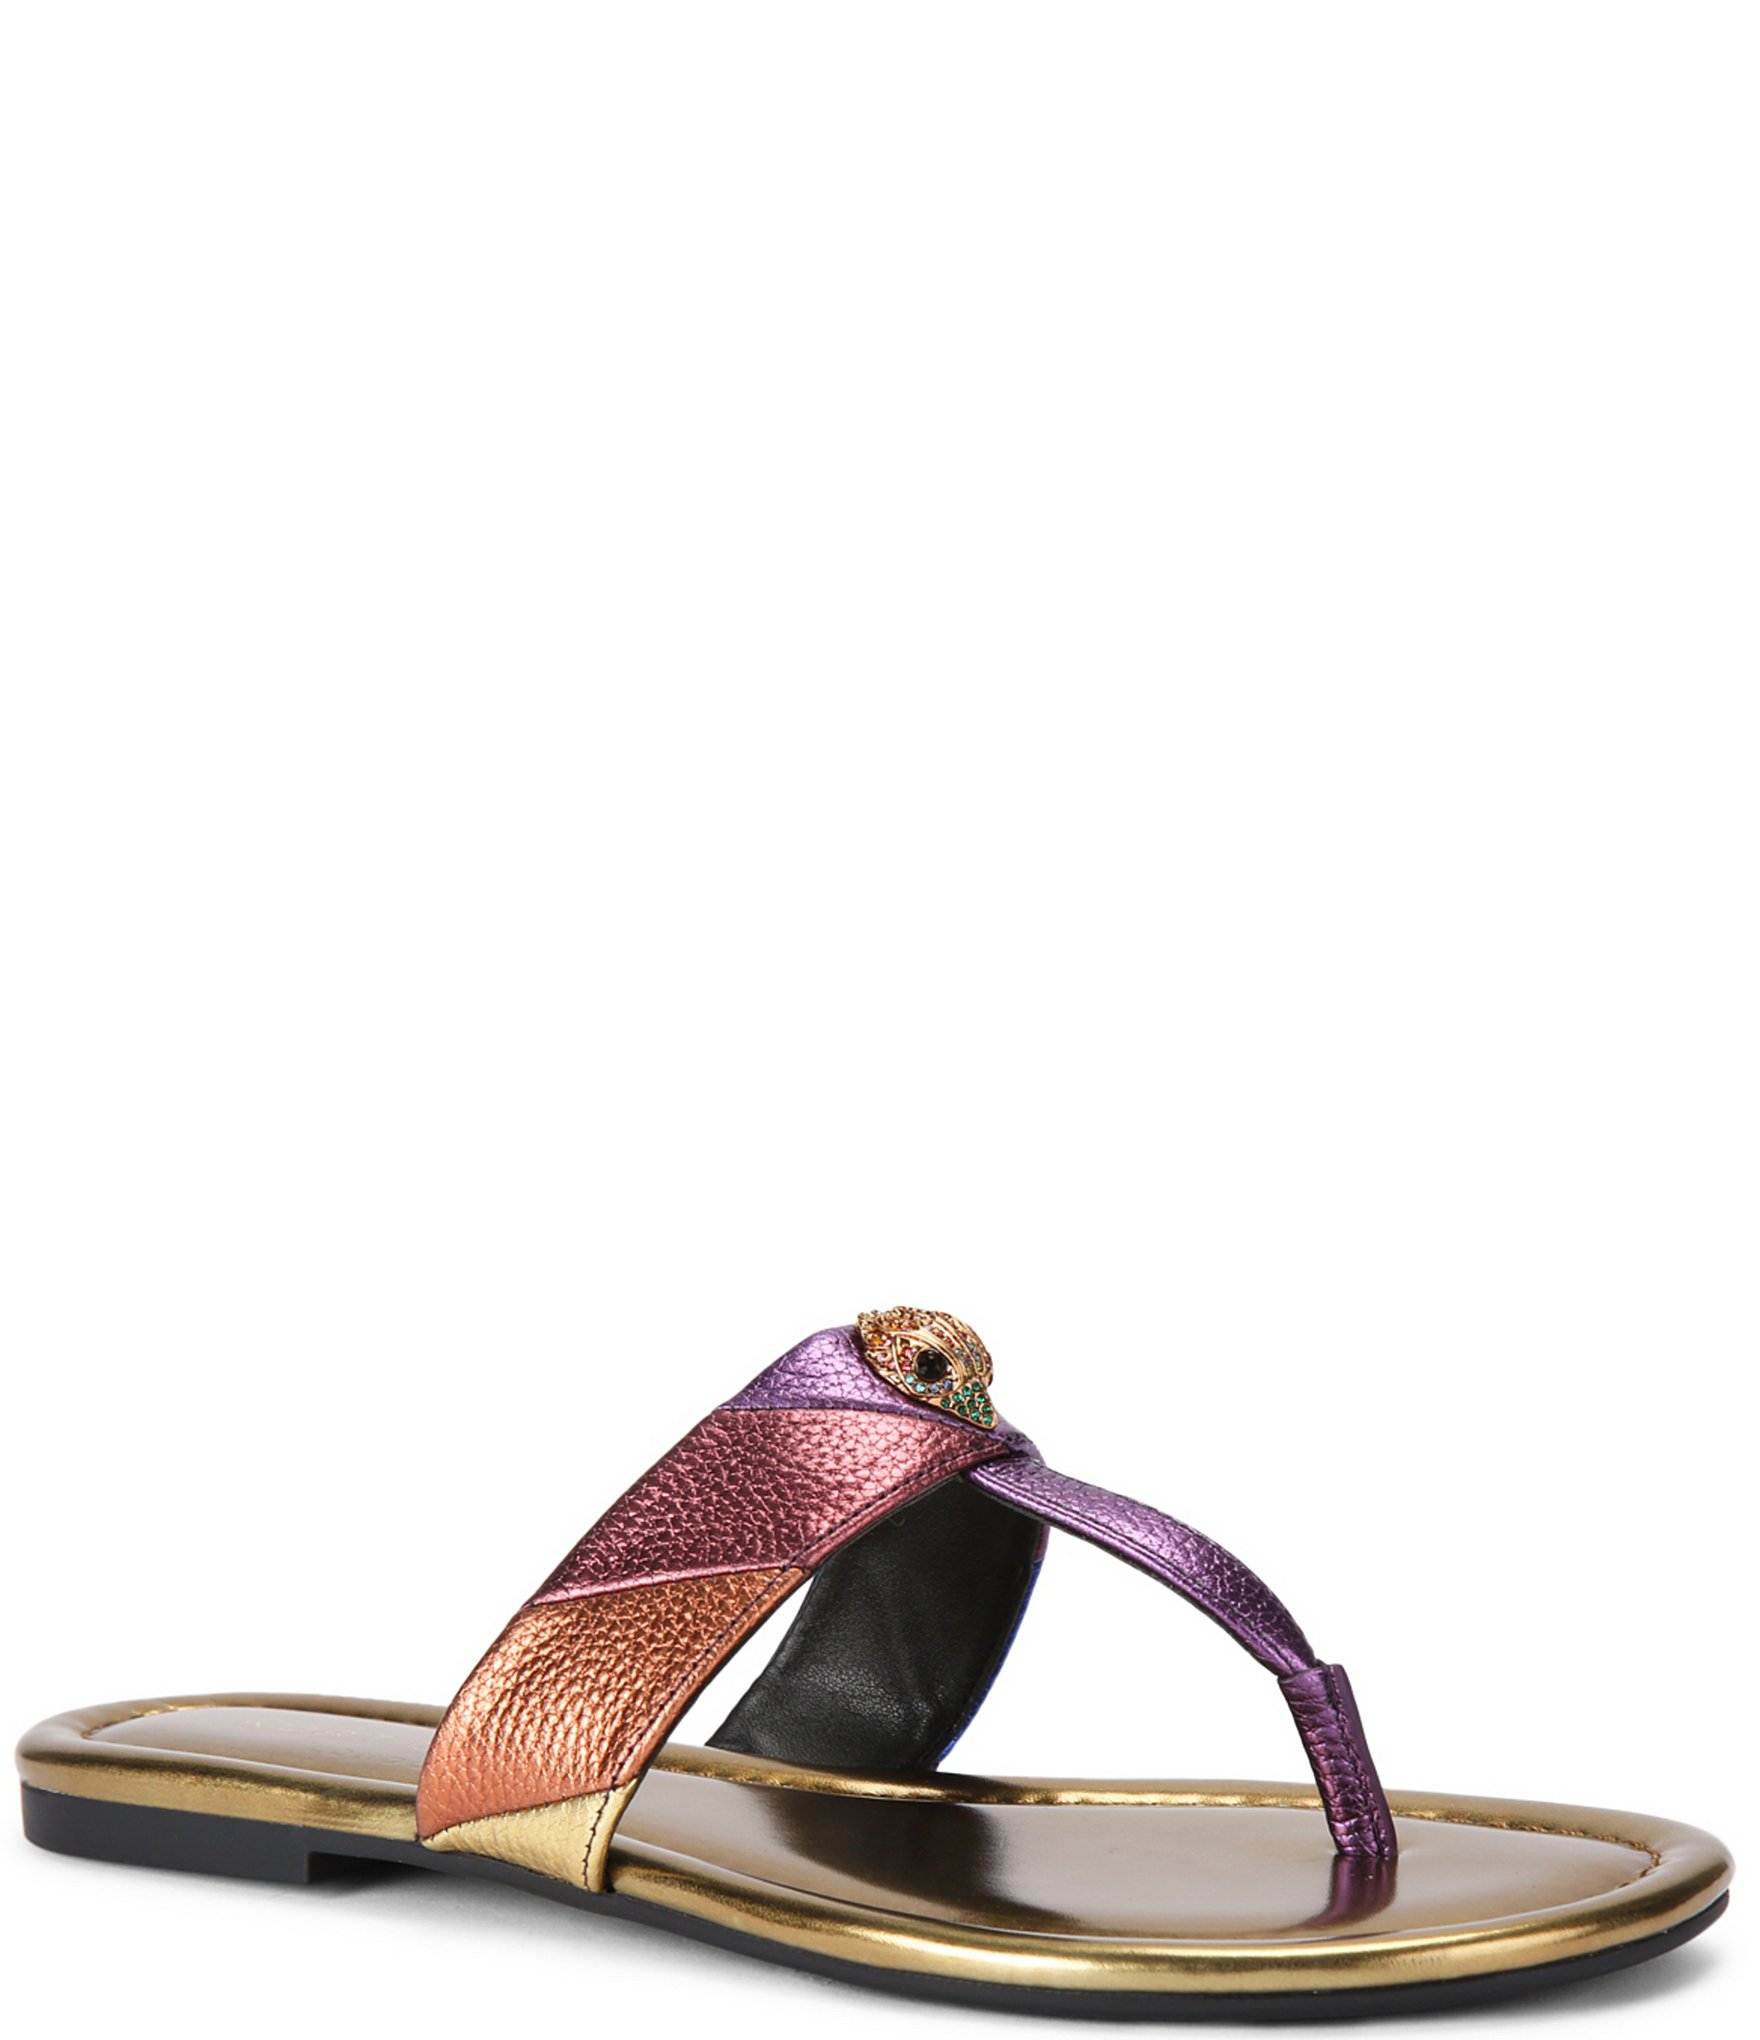 Kurt Geiger Pink Leather Crystal Embellished Mule Sandals/Shoes Uk Size  5/38 | eBay